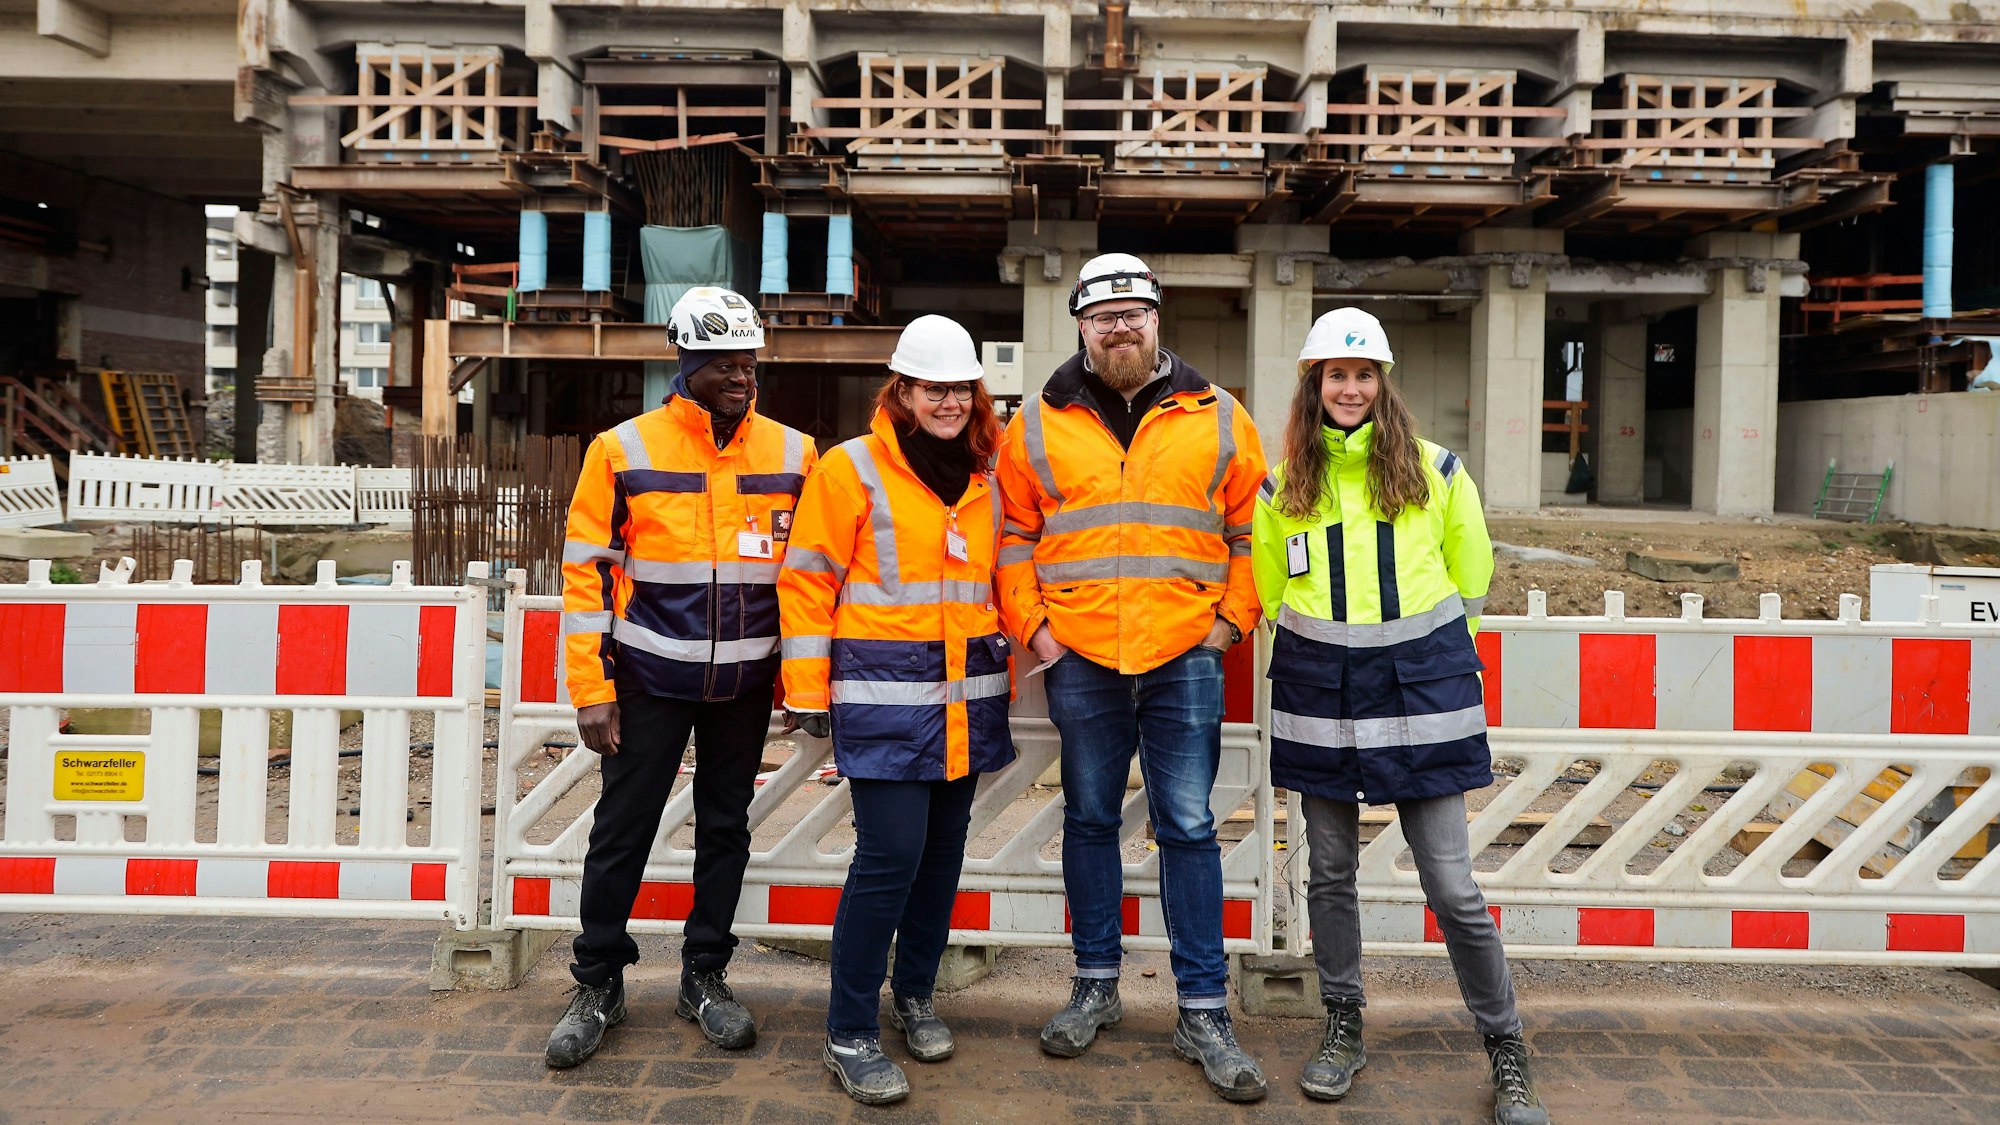 Haroumaa Ourdraogo, Sonja Rode,Christian Nolting und Sonja Naeckel (von links) stehen auf der Baustelle vor einer Absperrung und Betonbauteilen.